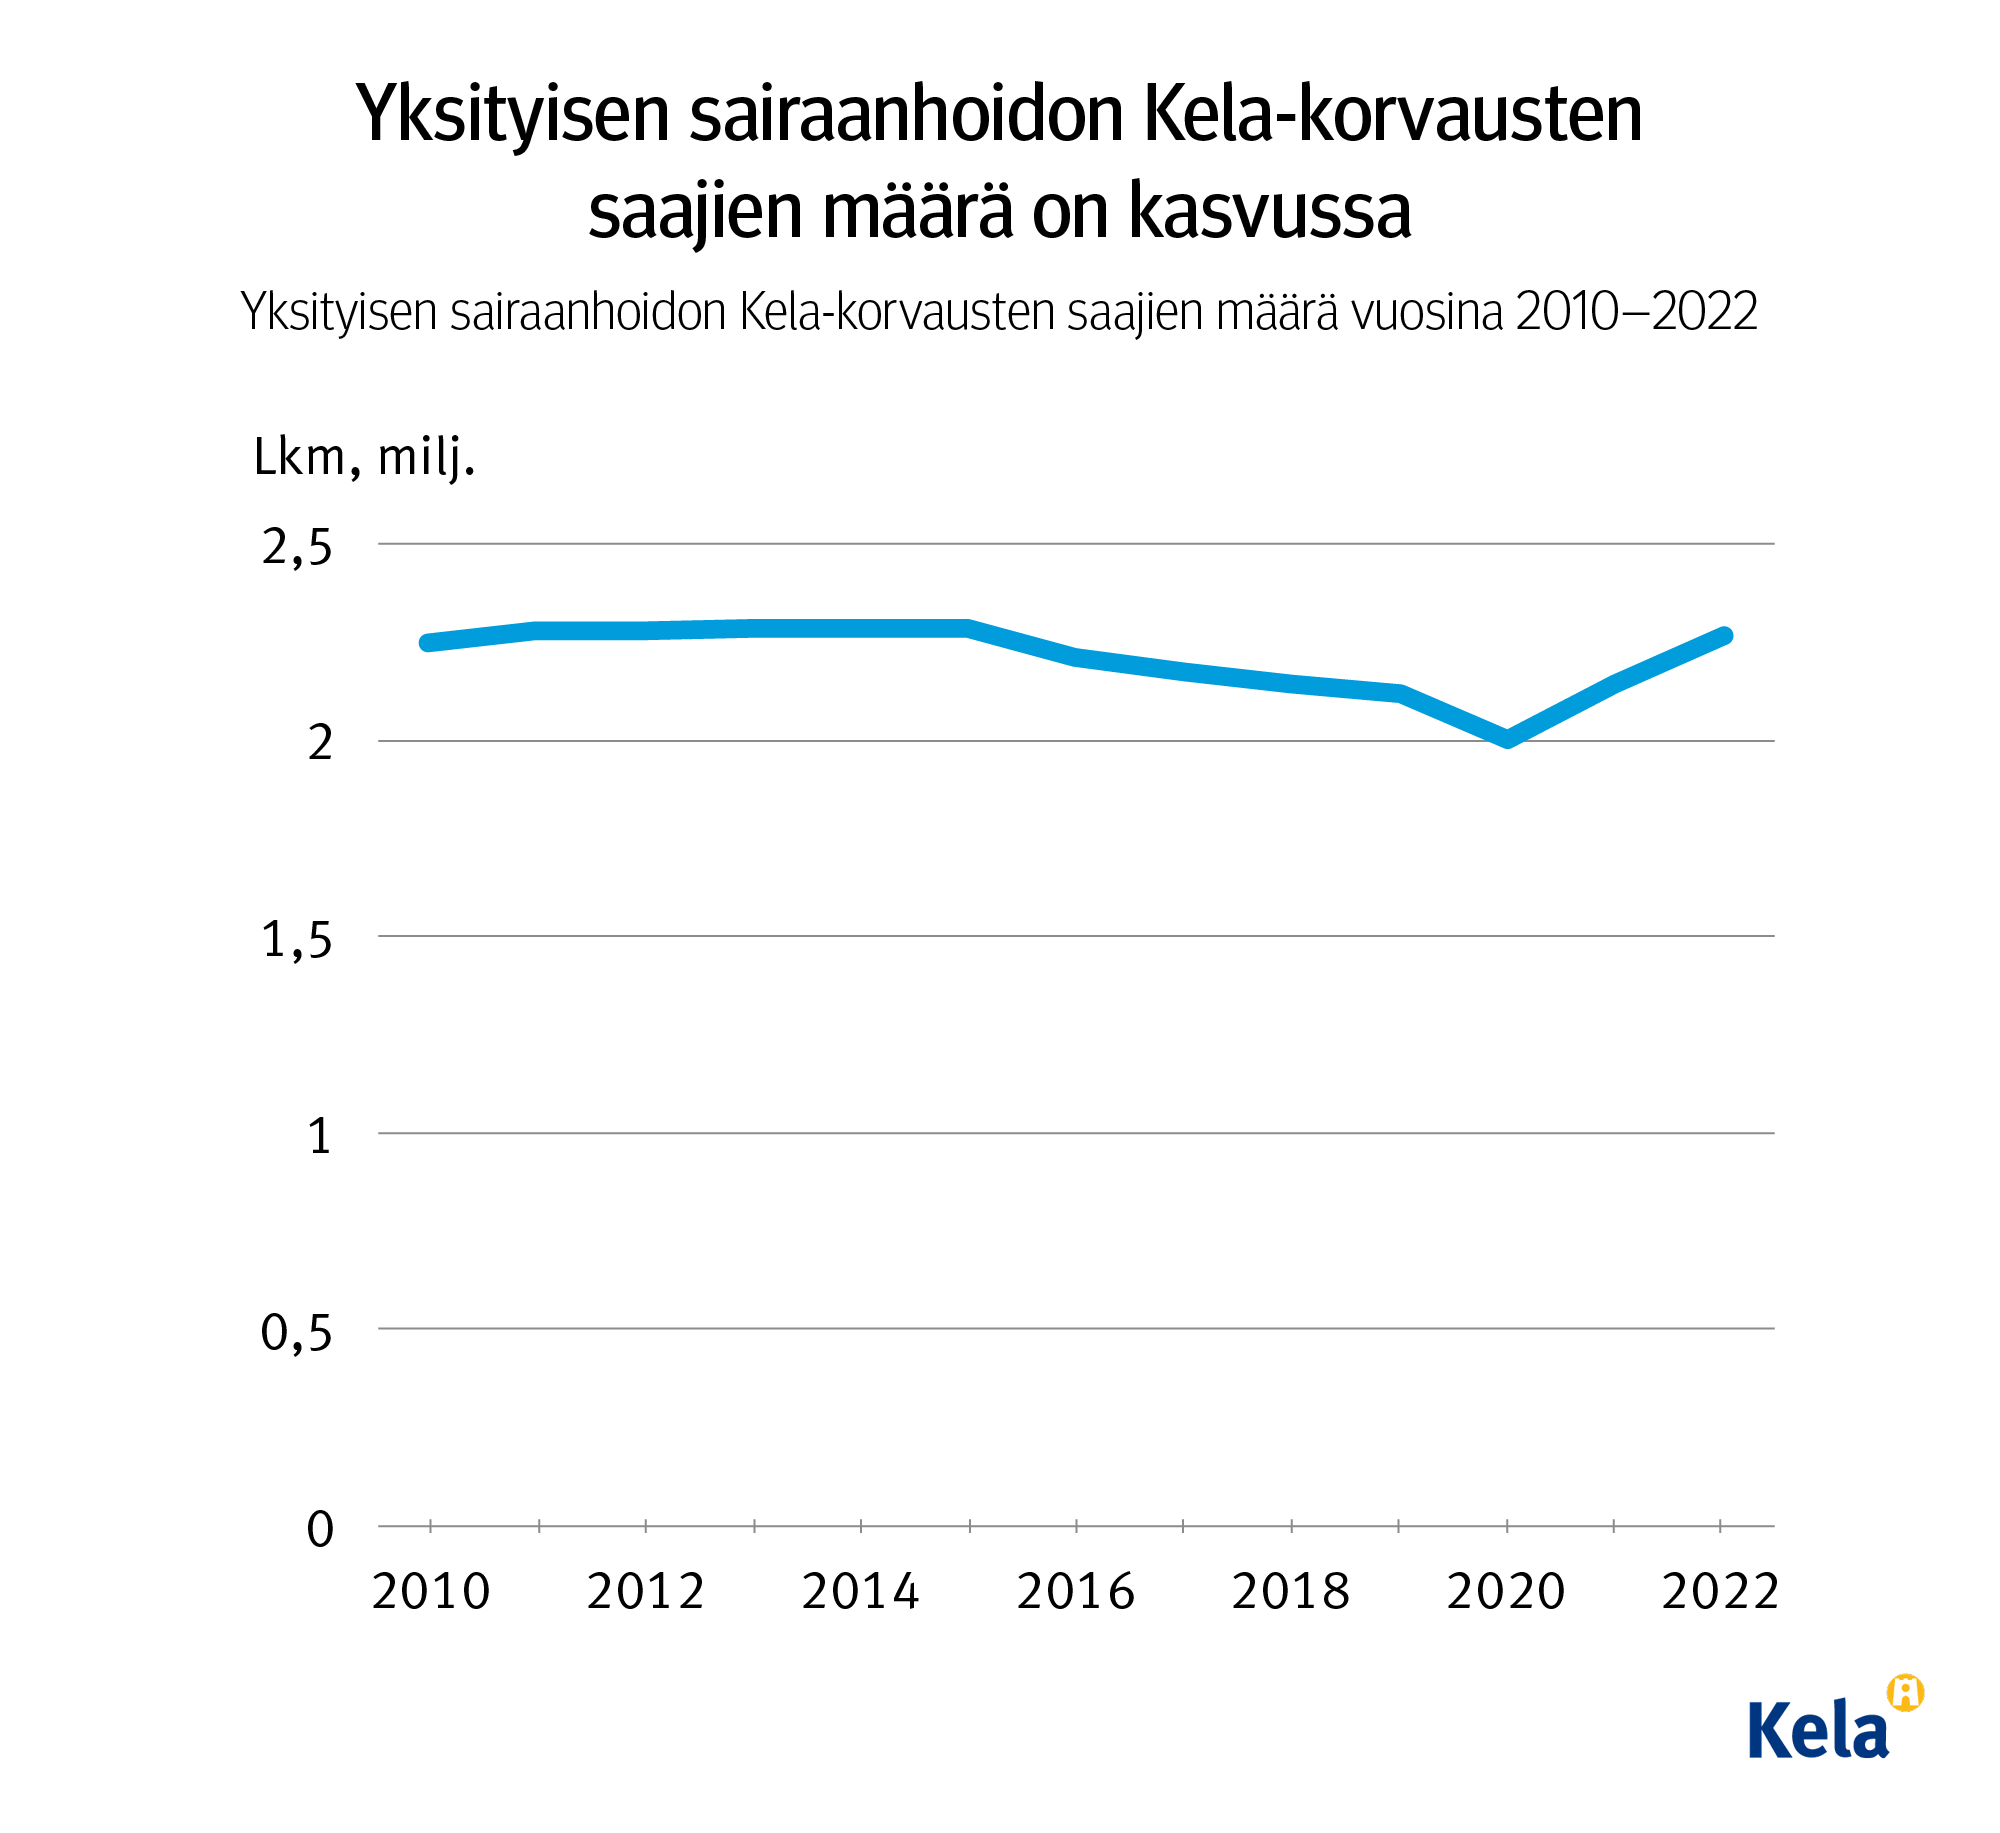 Kuvion otsikko: Yksityisen sairaanhoidon Kela-korvausten saajien määrä on kasvussa. Kuvio näyttää, että yksityisen sairaanhoidon Kela-korvausten saajamäärä on pysynyt melko tasaisena vuodesta 2010 alkaen, kunnes se laski selvästi vuonna 2020. Sen jälkeen määrä kuitenkin taas nousi aiemmalle tasolle vuosina 2021-2022.